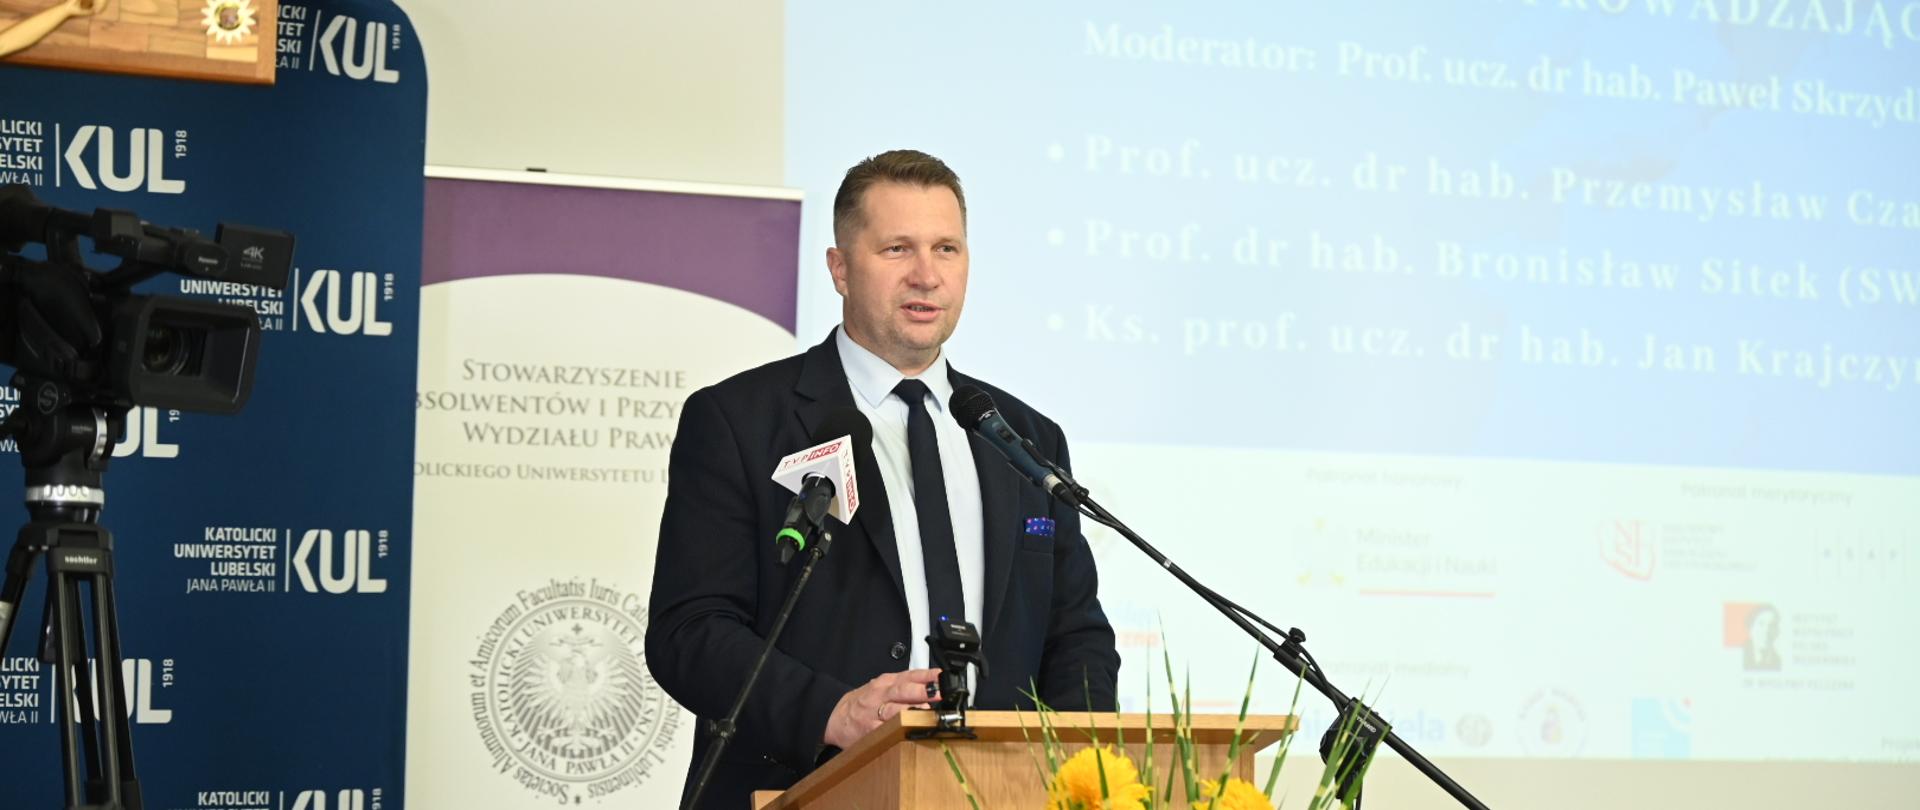 Minister Czarnek stoi za drewnianą mównicą i mówi do dwóch mikrofonów, przed mównicą bukiet żółtych kwiatów, za nim ścianka z napisem KUL.